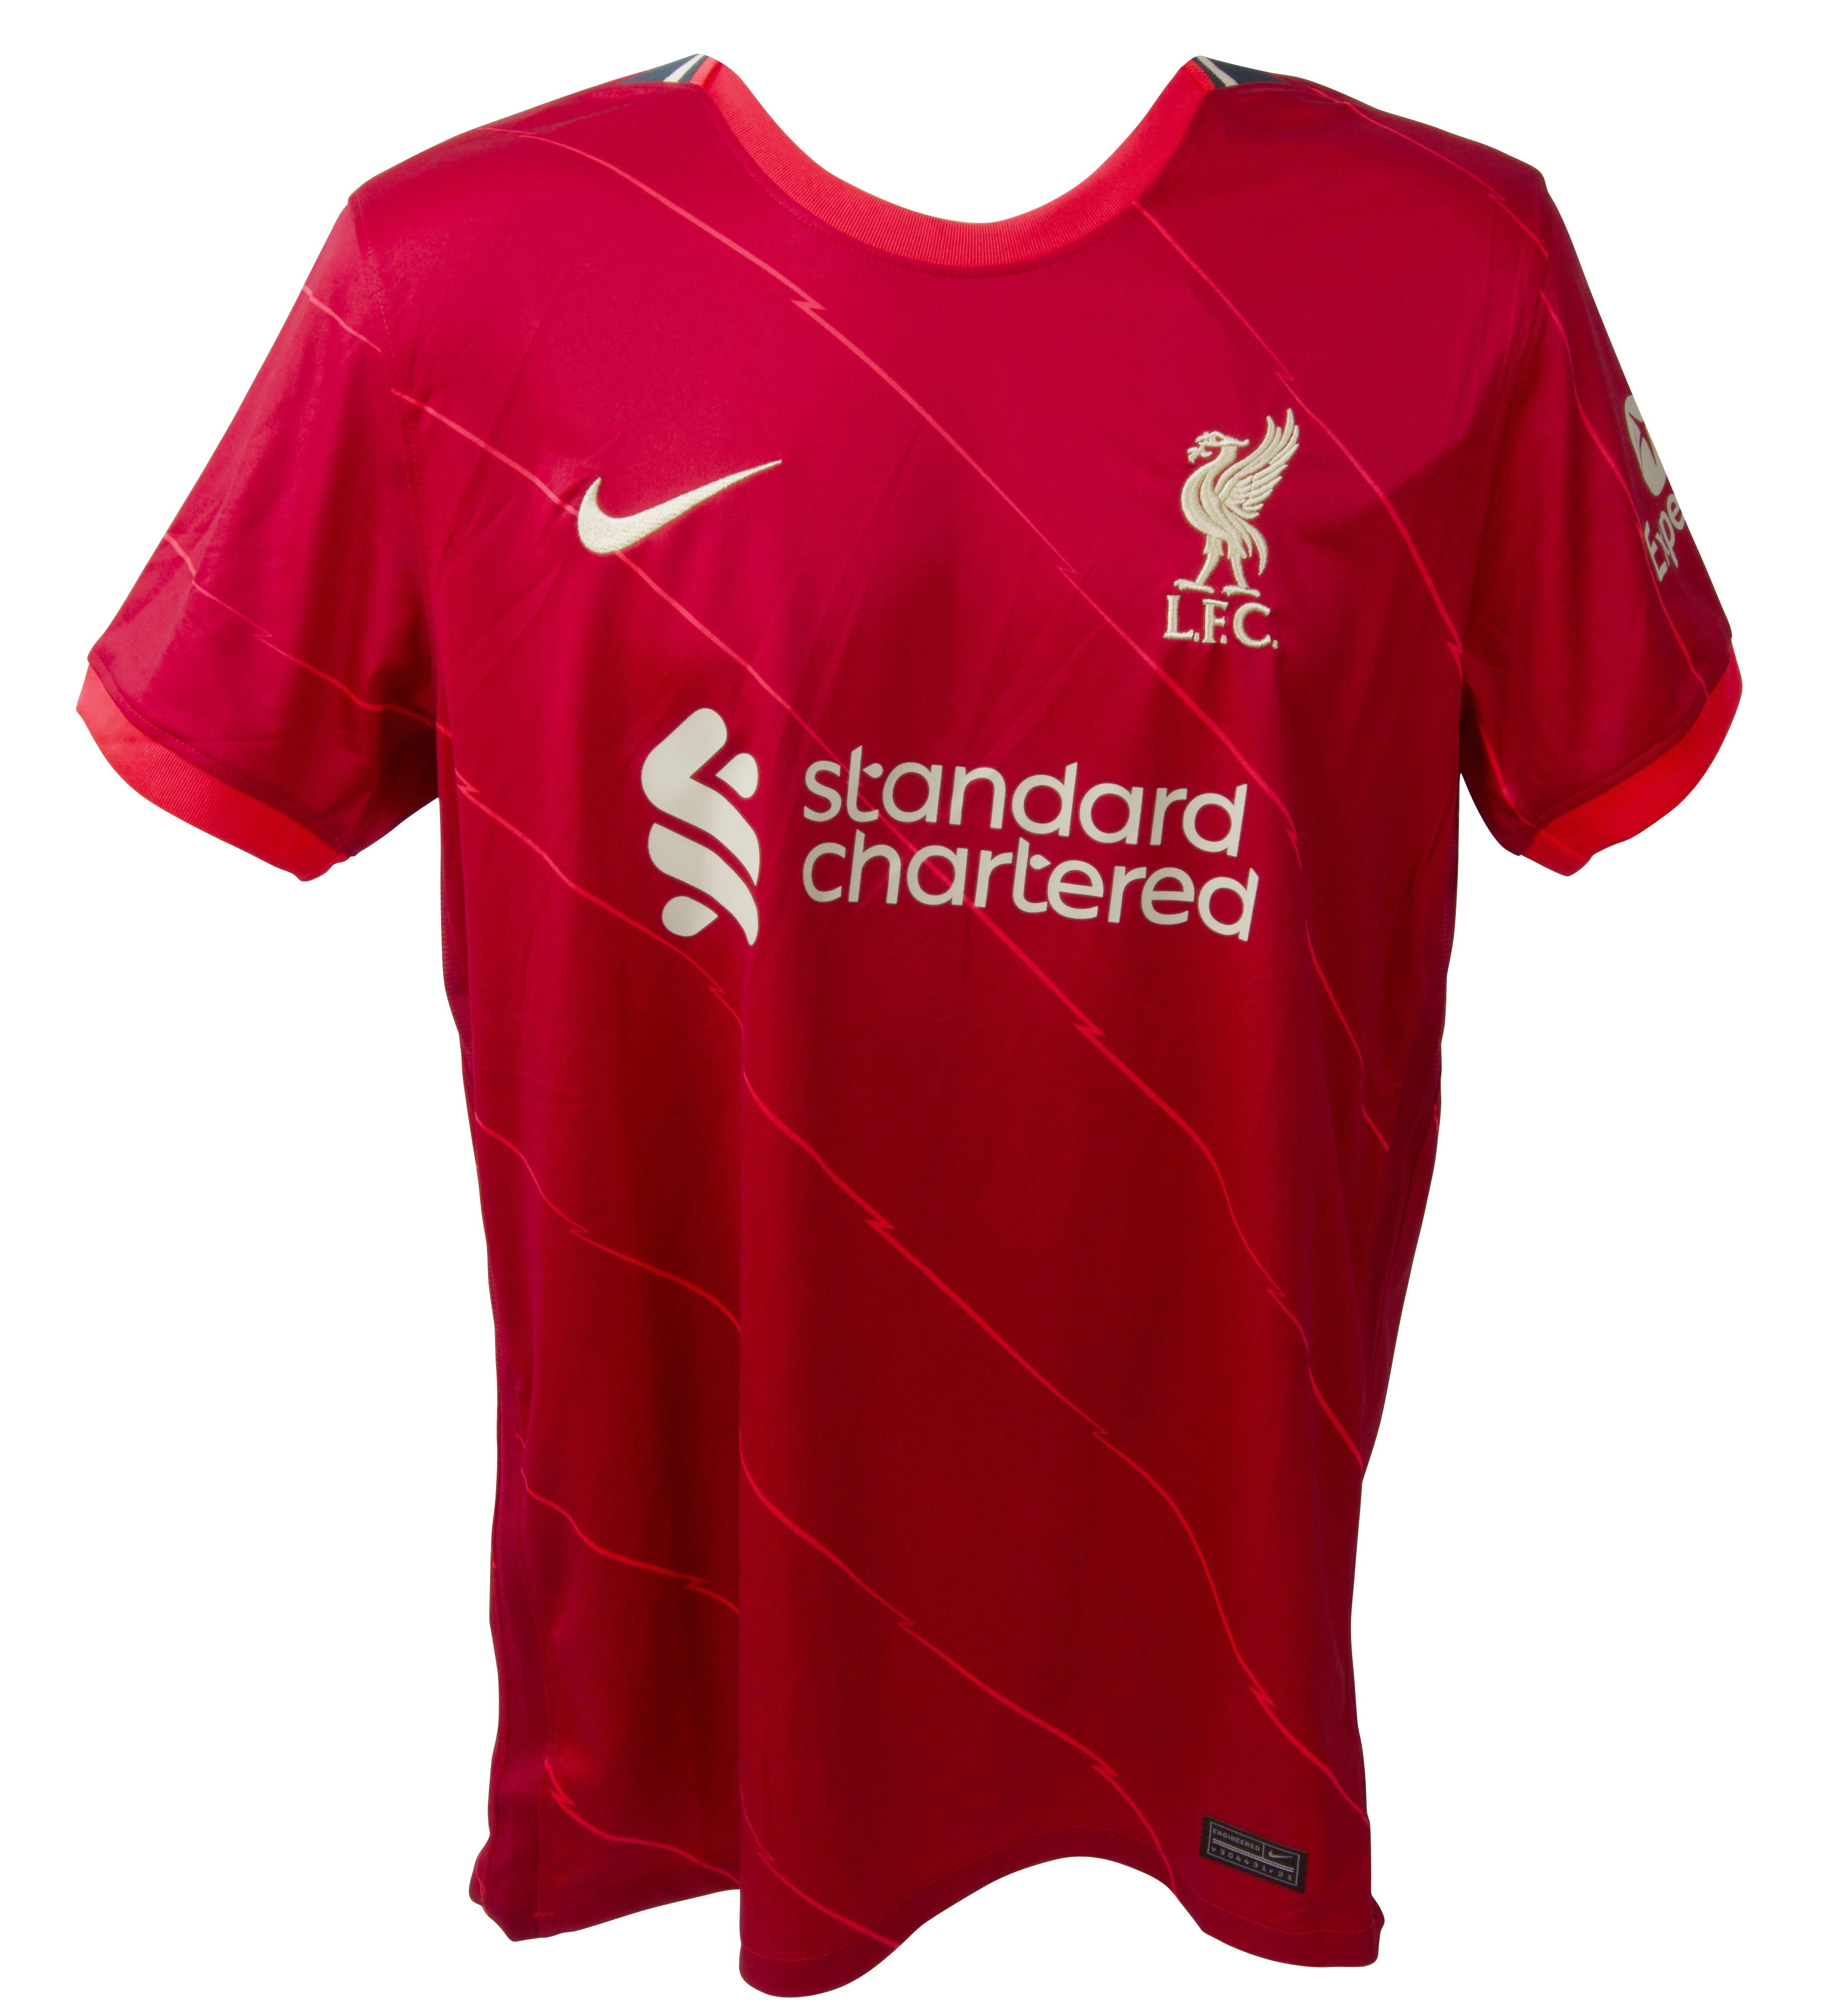 Gerrard's Liverpool Match Shirt, 2012/13 - CharityStars